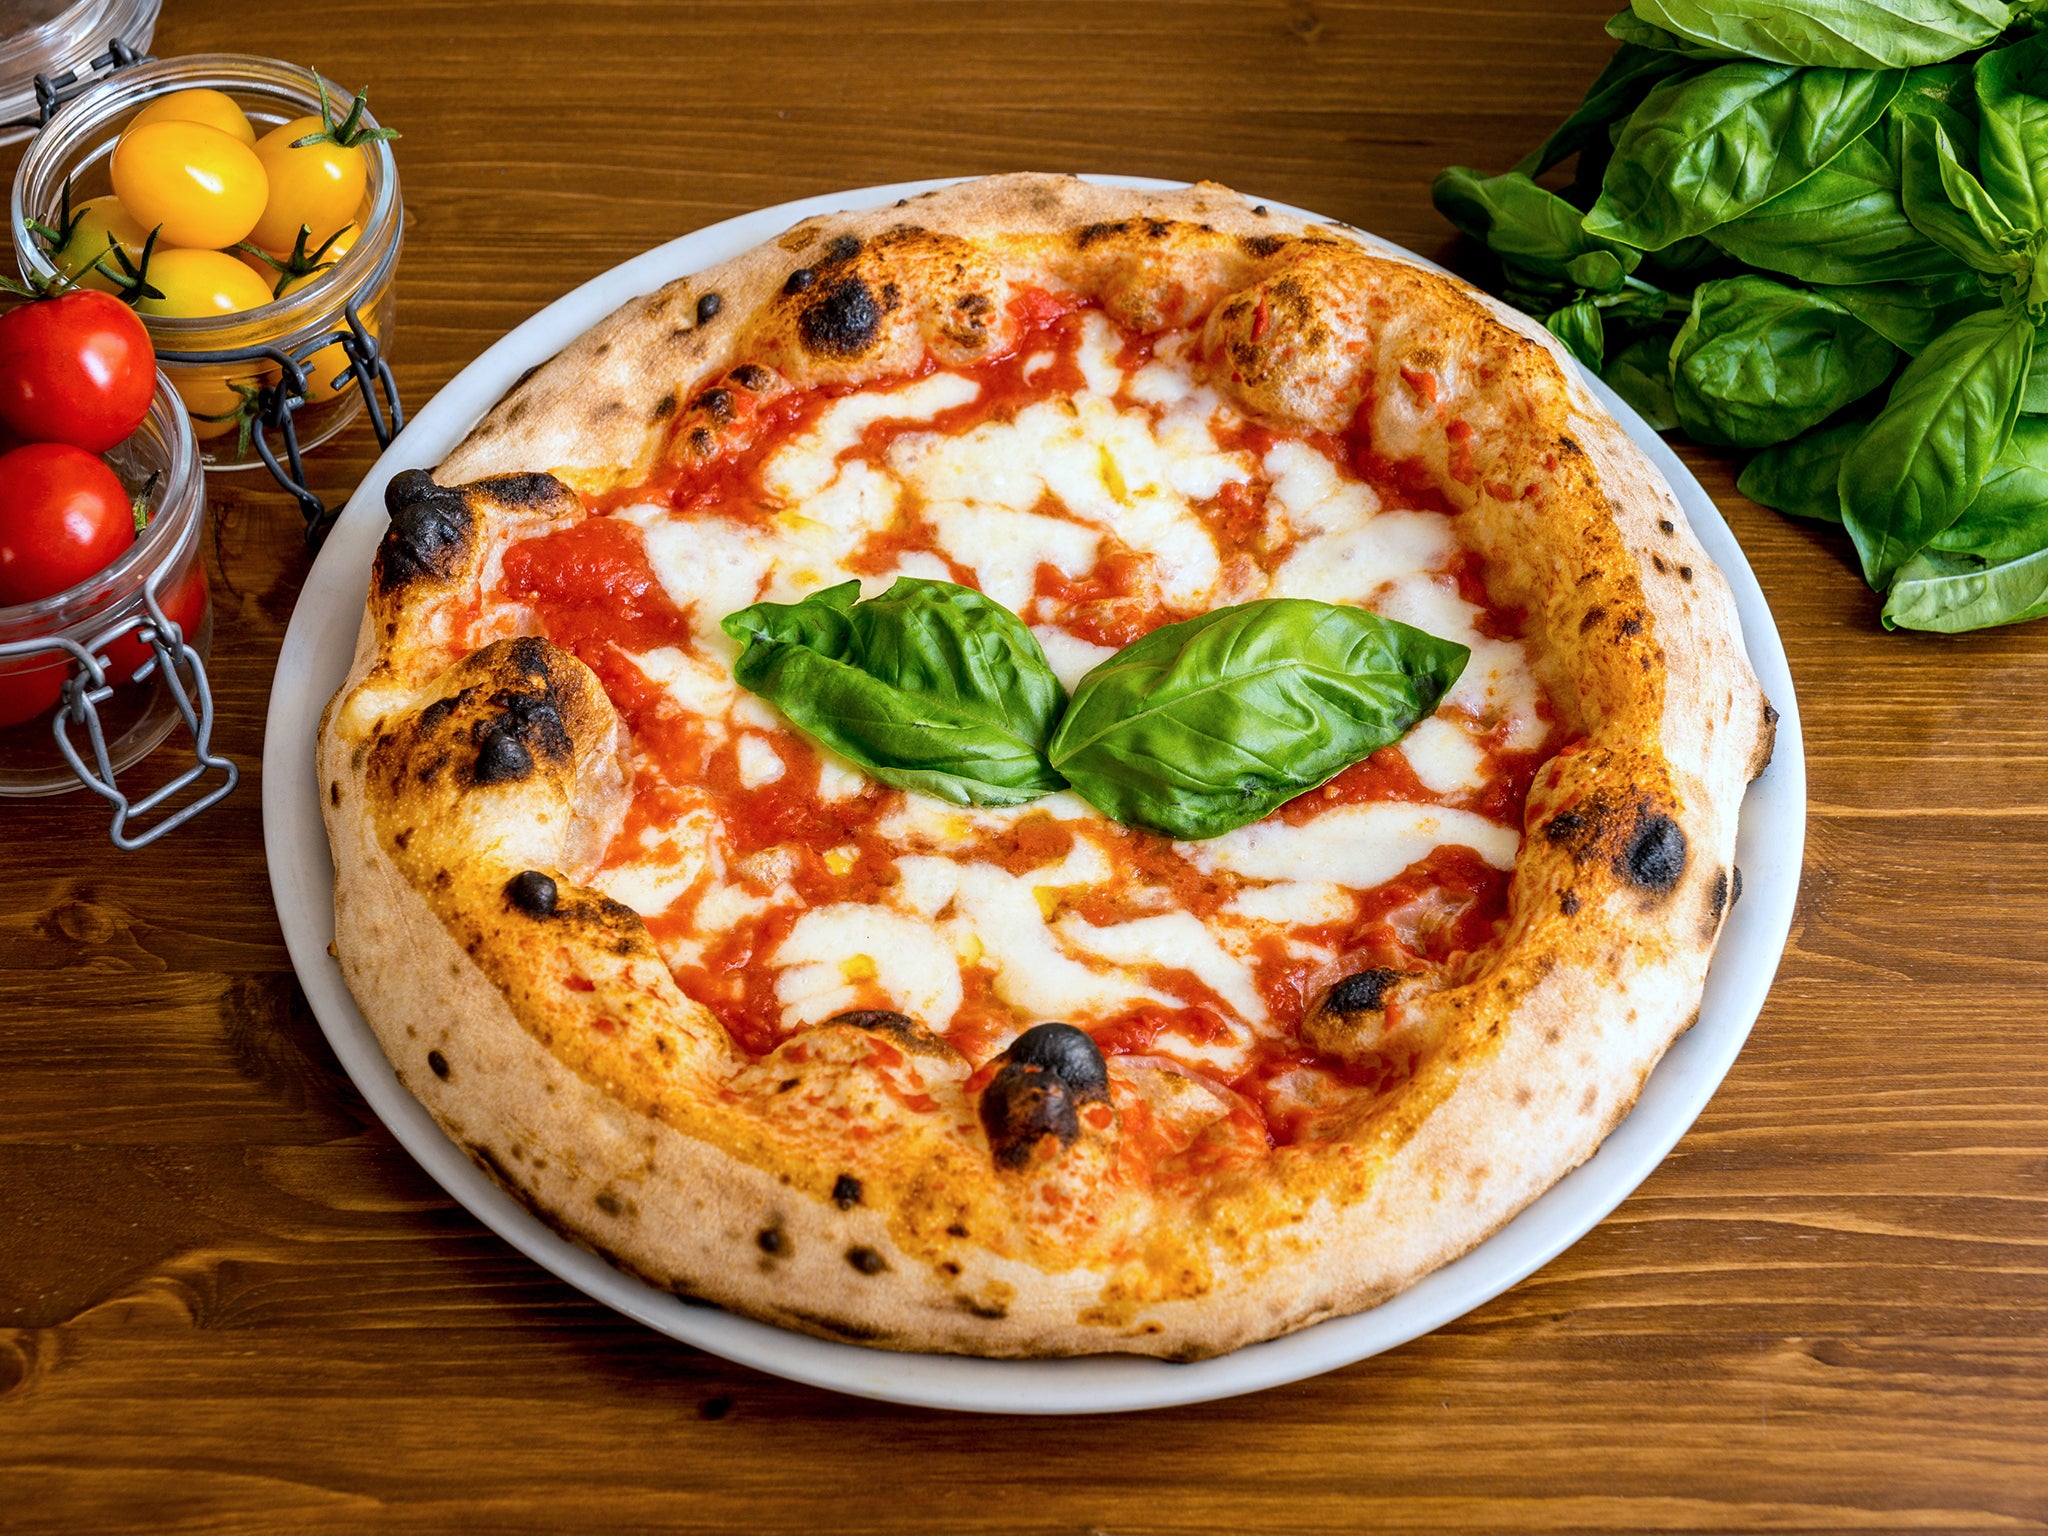 Según un nuevo libro, la primera vez que se le puso salsa de tomate a la pizza fue en Estados Unidos durante el siglo XIX